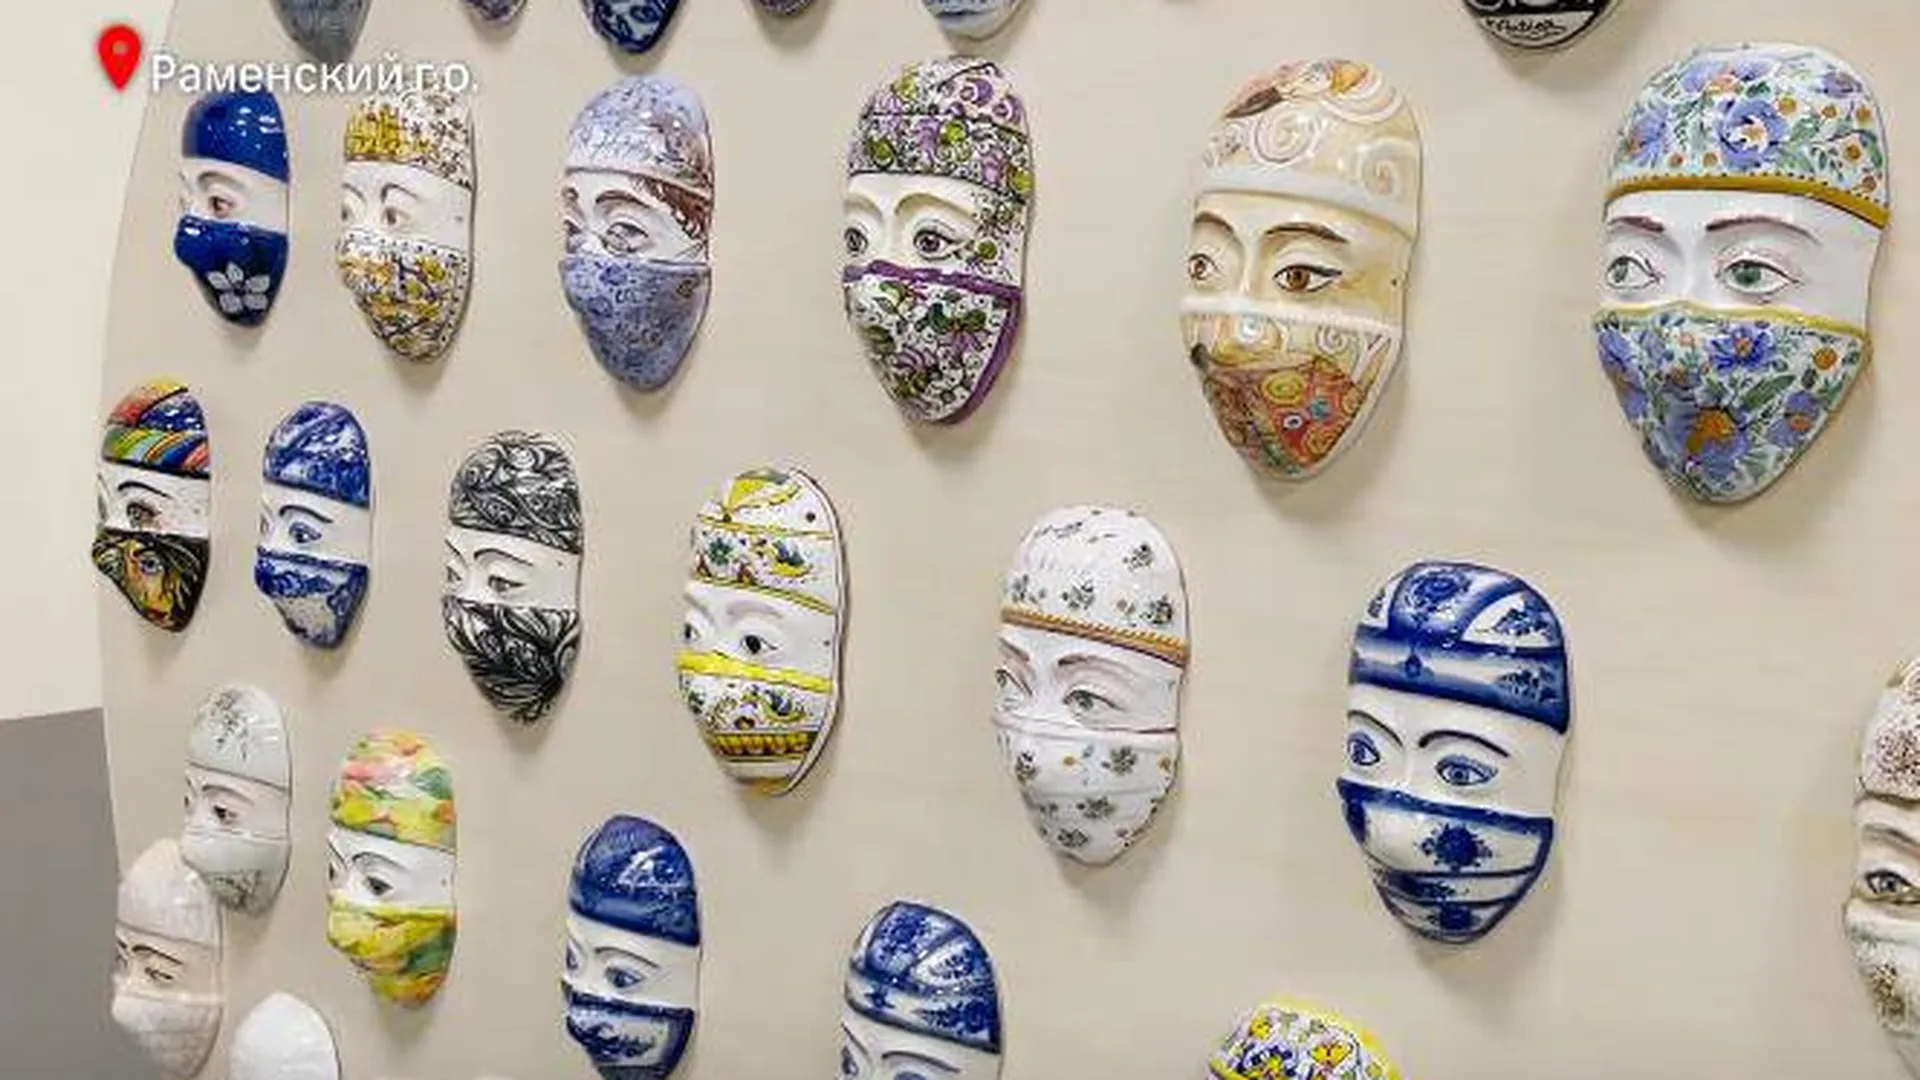 Керамические маски с глазами врачей из красной зоны выставили в Подмосковье